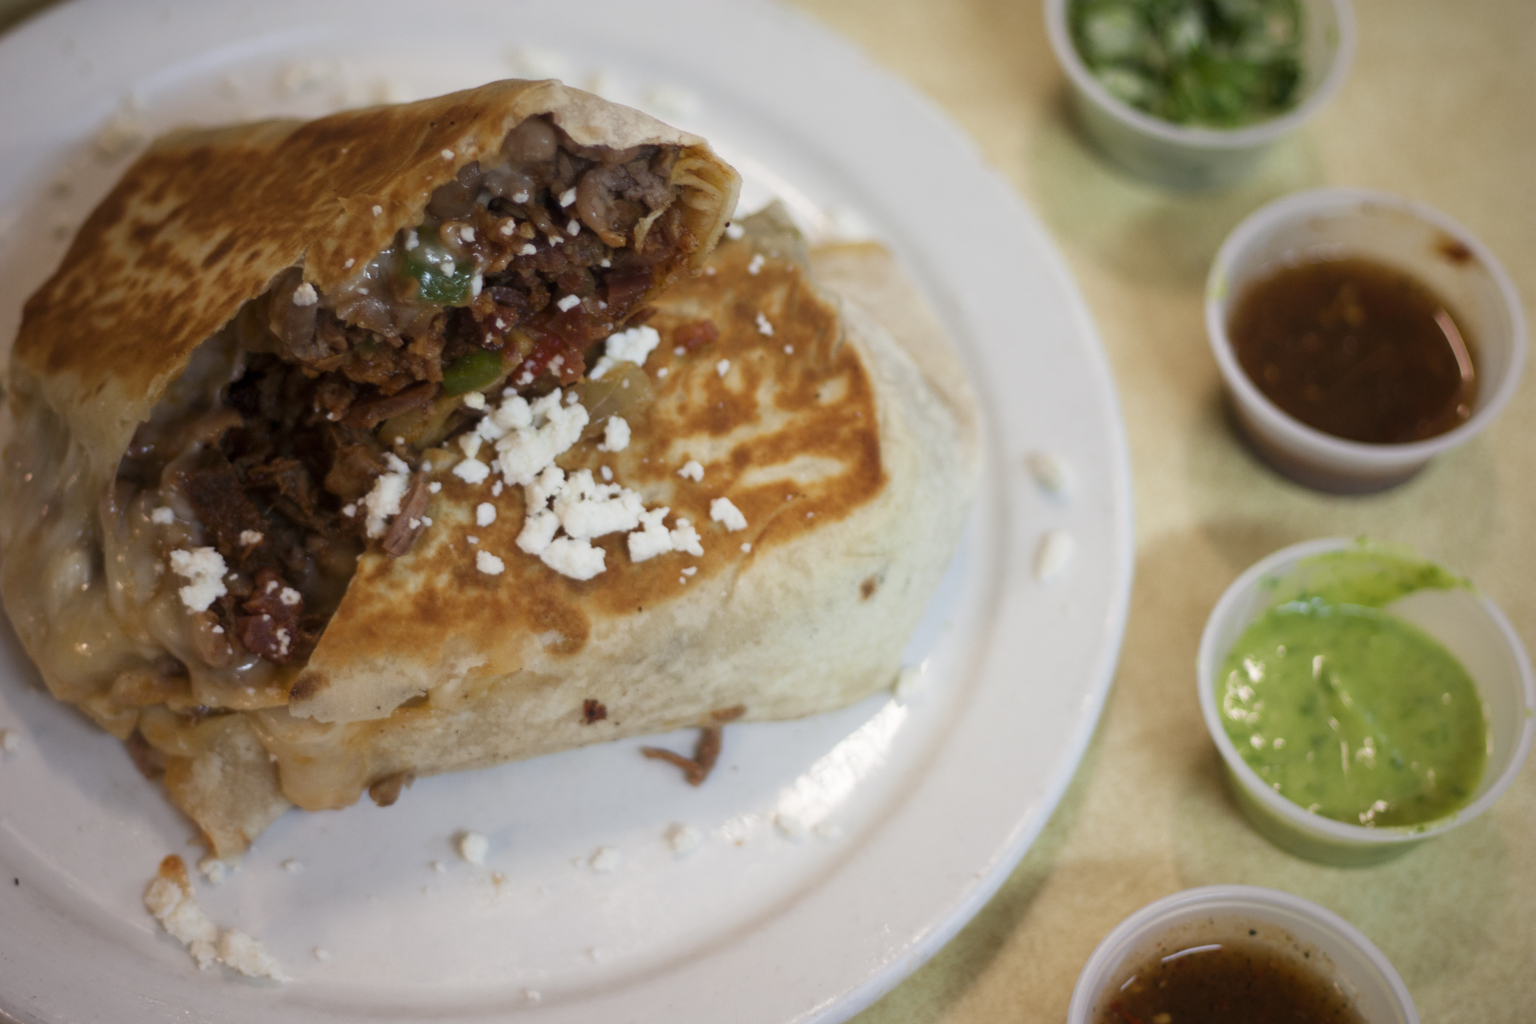 Burrito bucket list: Birria burrito Francisco's style at Francisco's De Noche